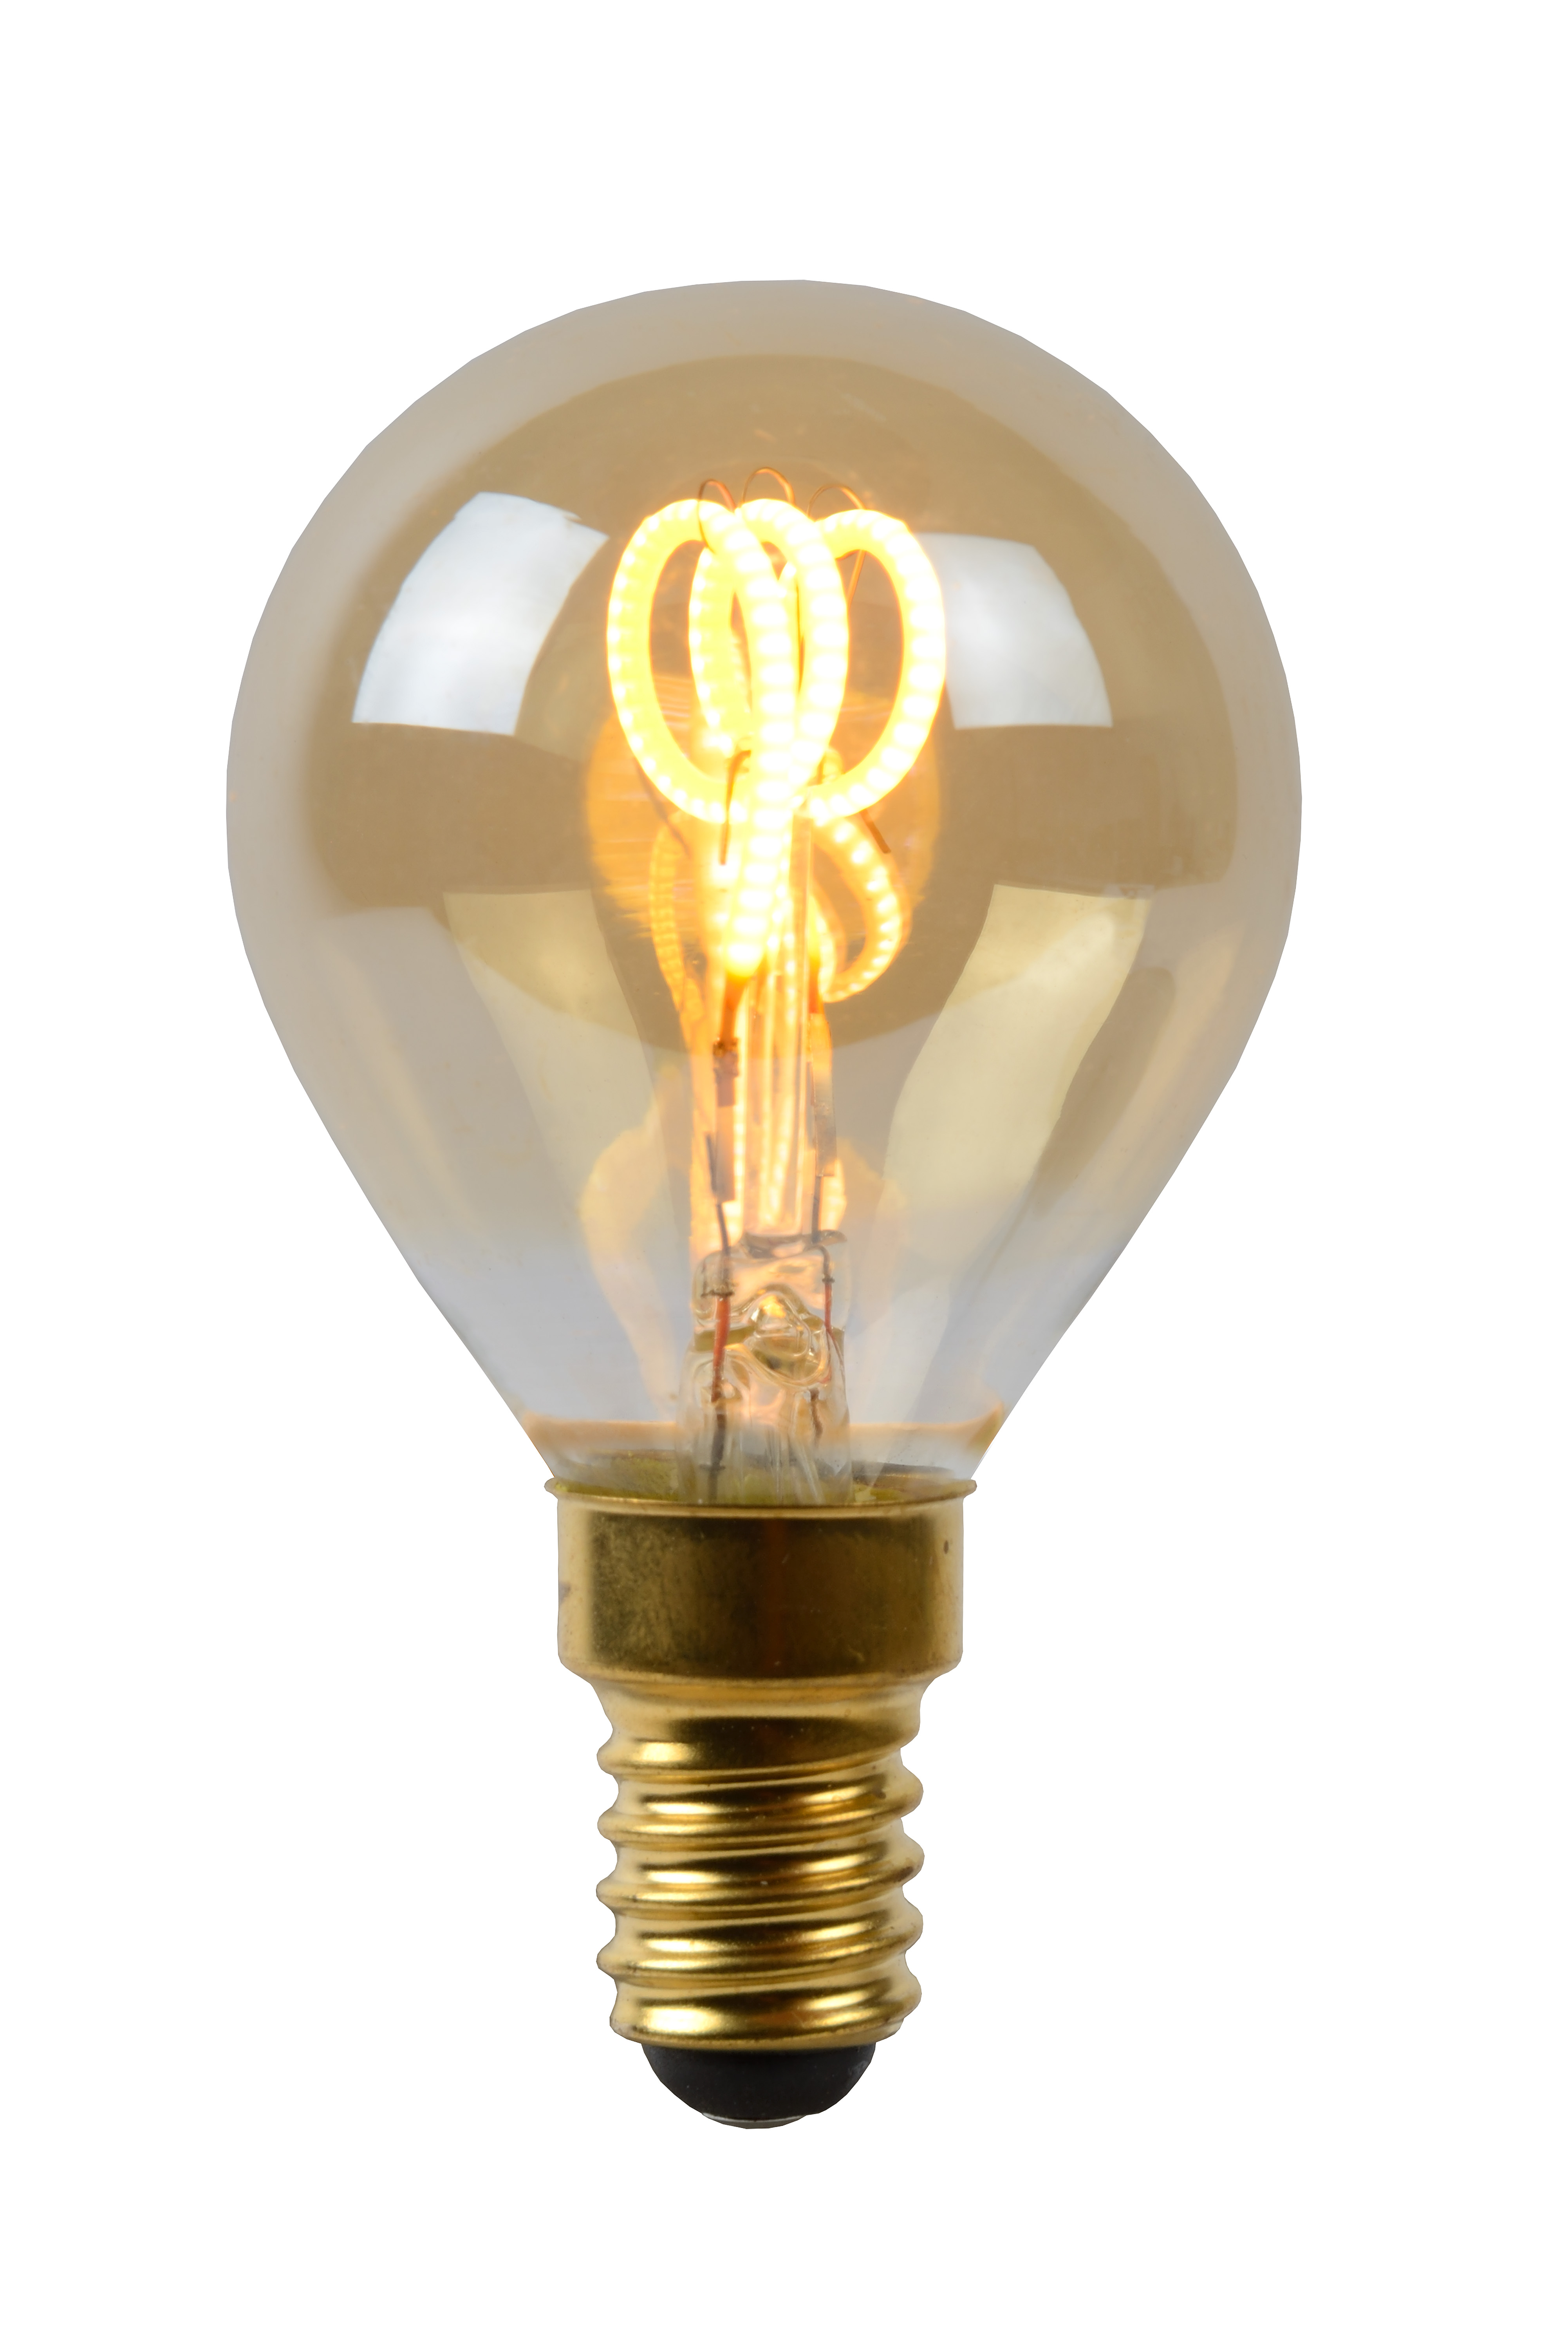 Scheiding Christchurch rammelaar LED lamp kogel amber 3W E14